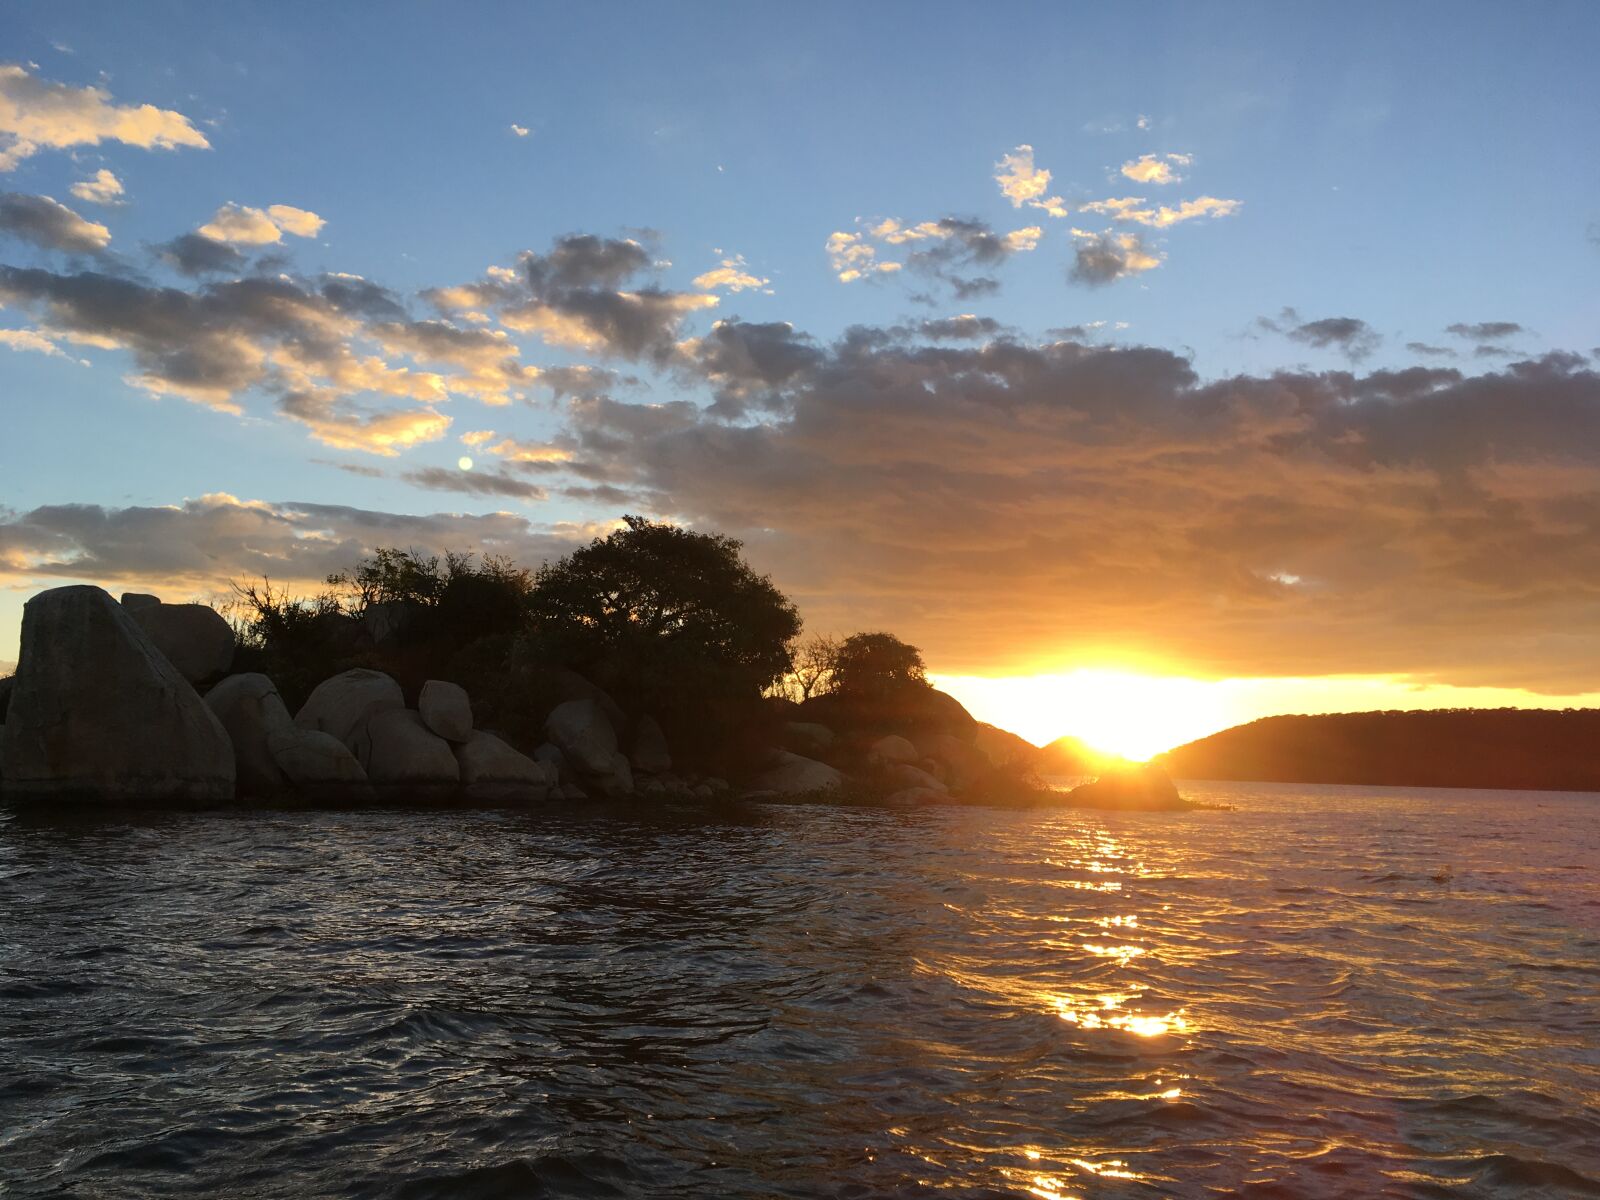 Apple iPhone SE sample photo. Lake, sunset photography